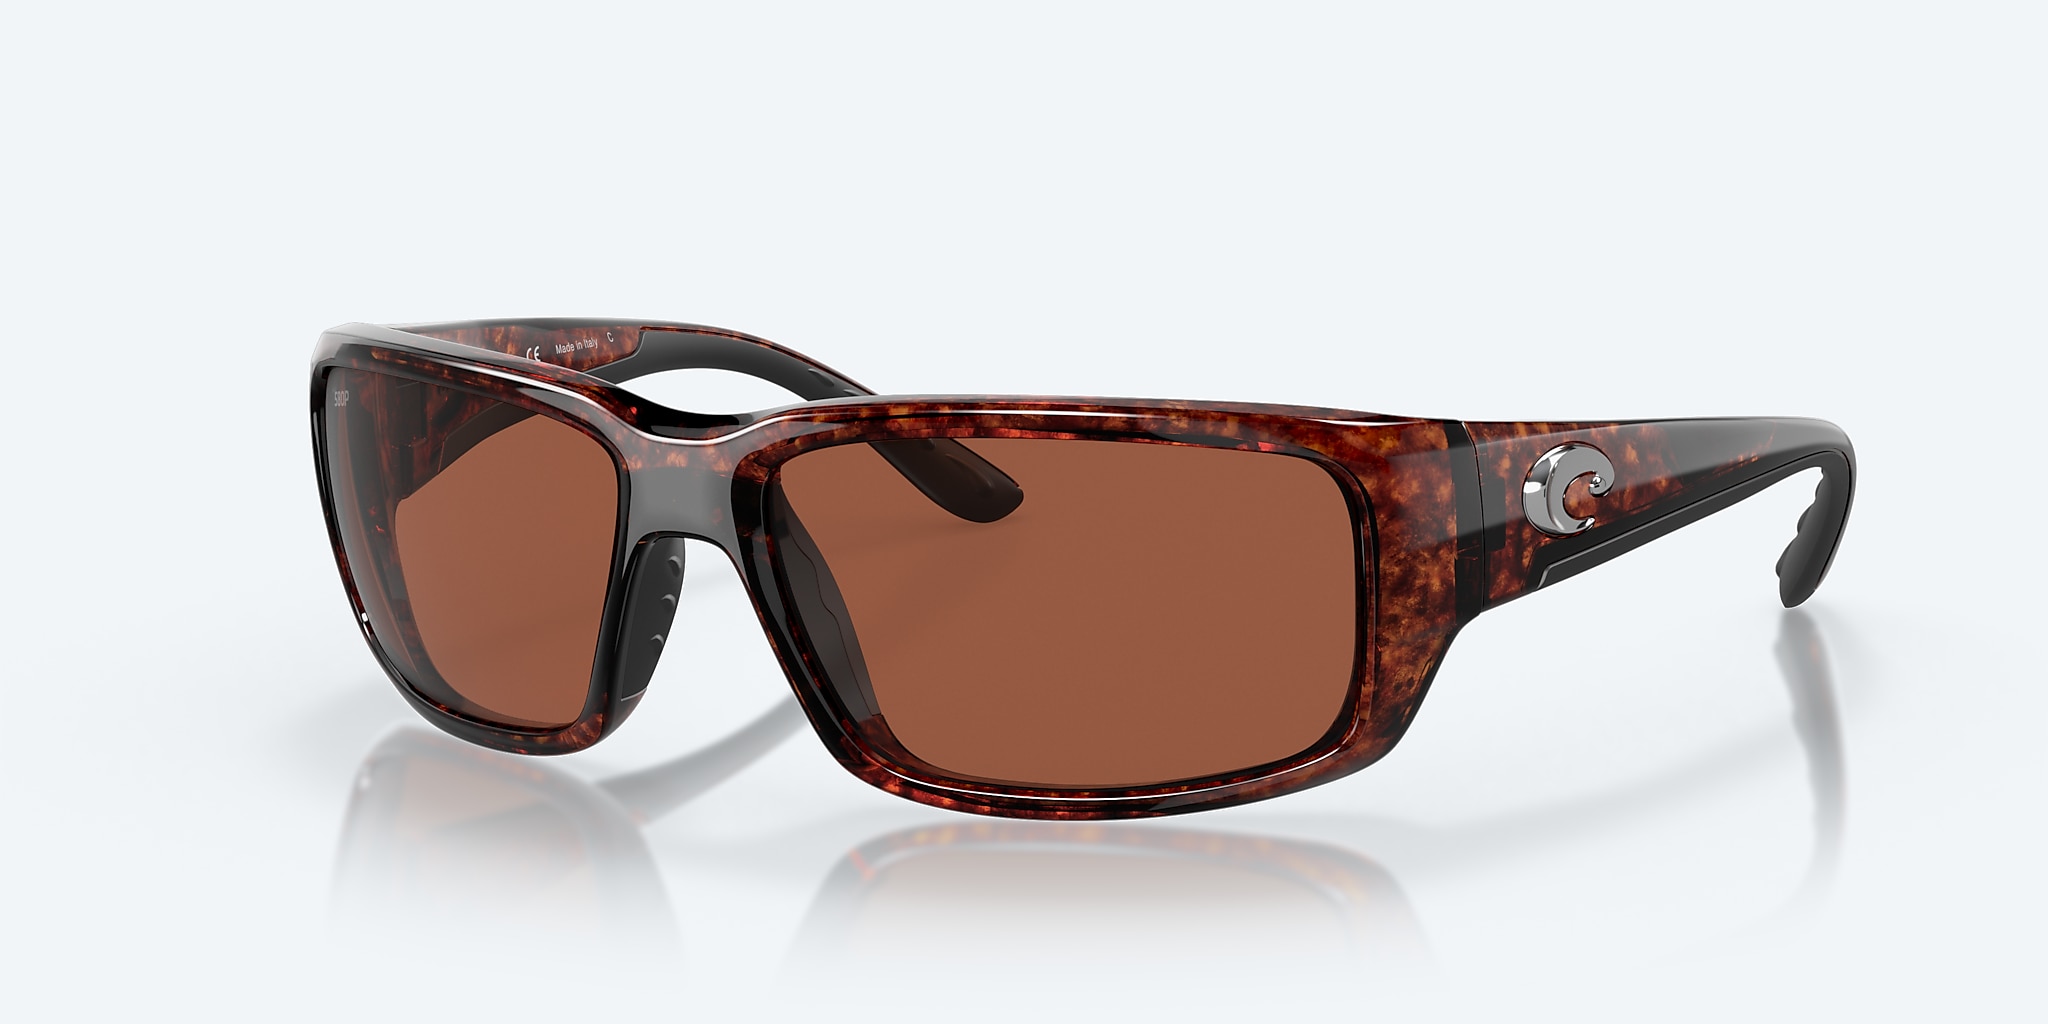 Fantail Polarized Sunglasses in Copper